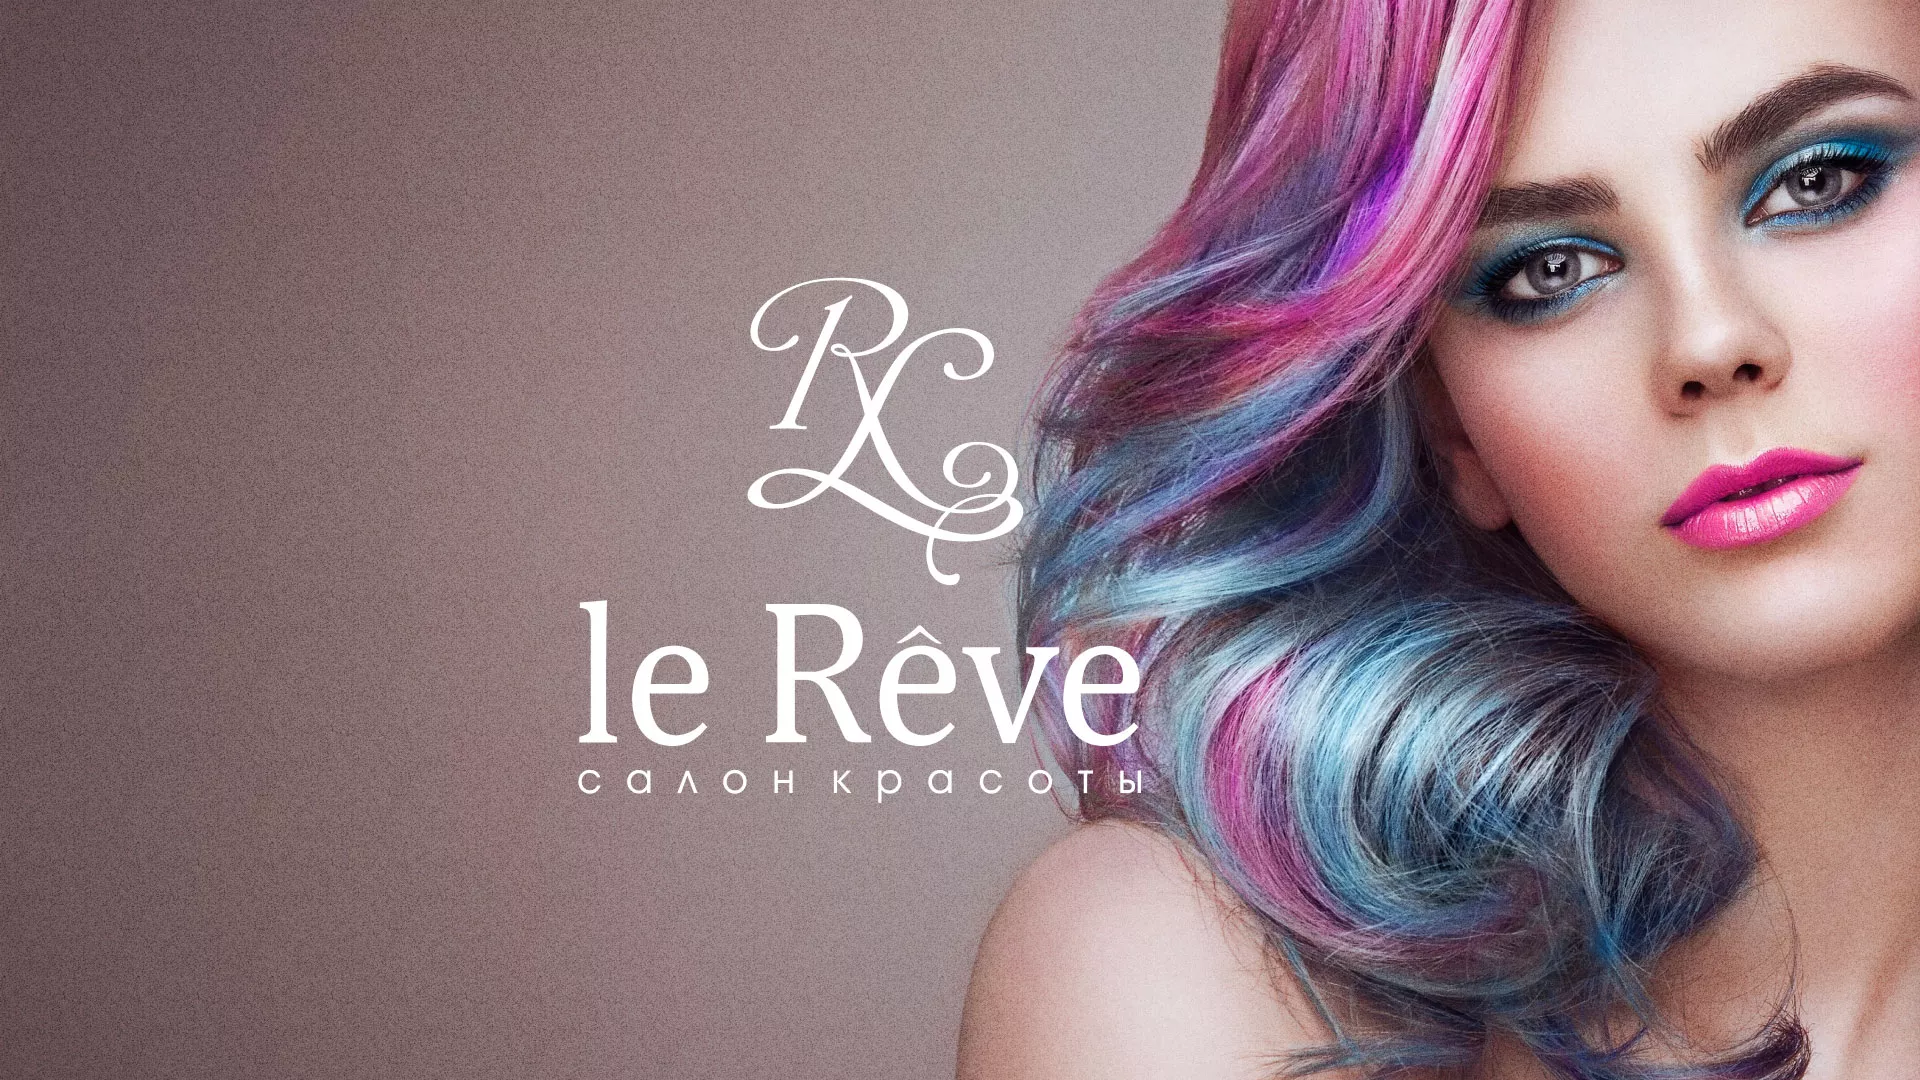 Создание сайта для салона красоты «Le Reve» в Новосокольниках